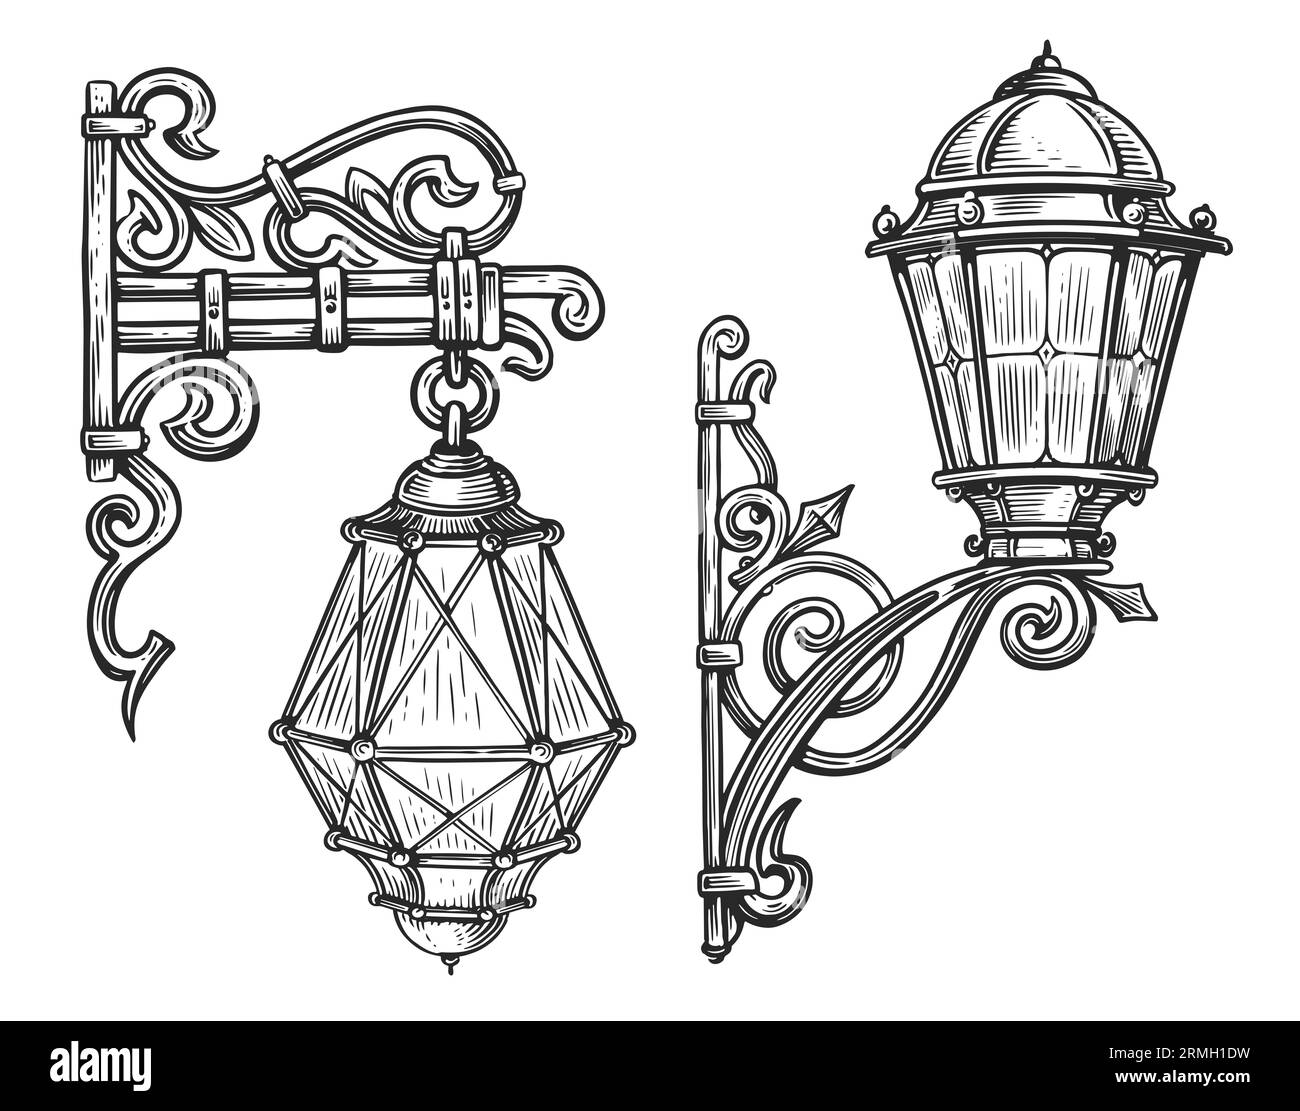 Lampione da parete in ferro battuto in stile incisione. Illustrazione vintage dello schizzo delle lanterne Foto Stock